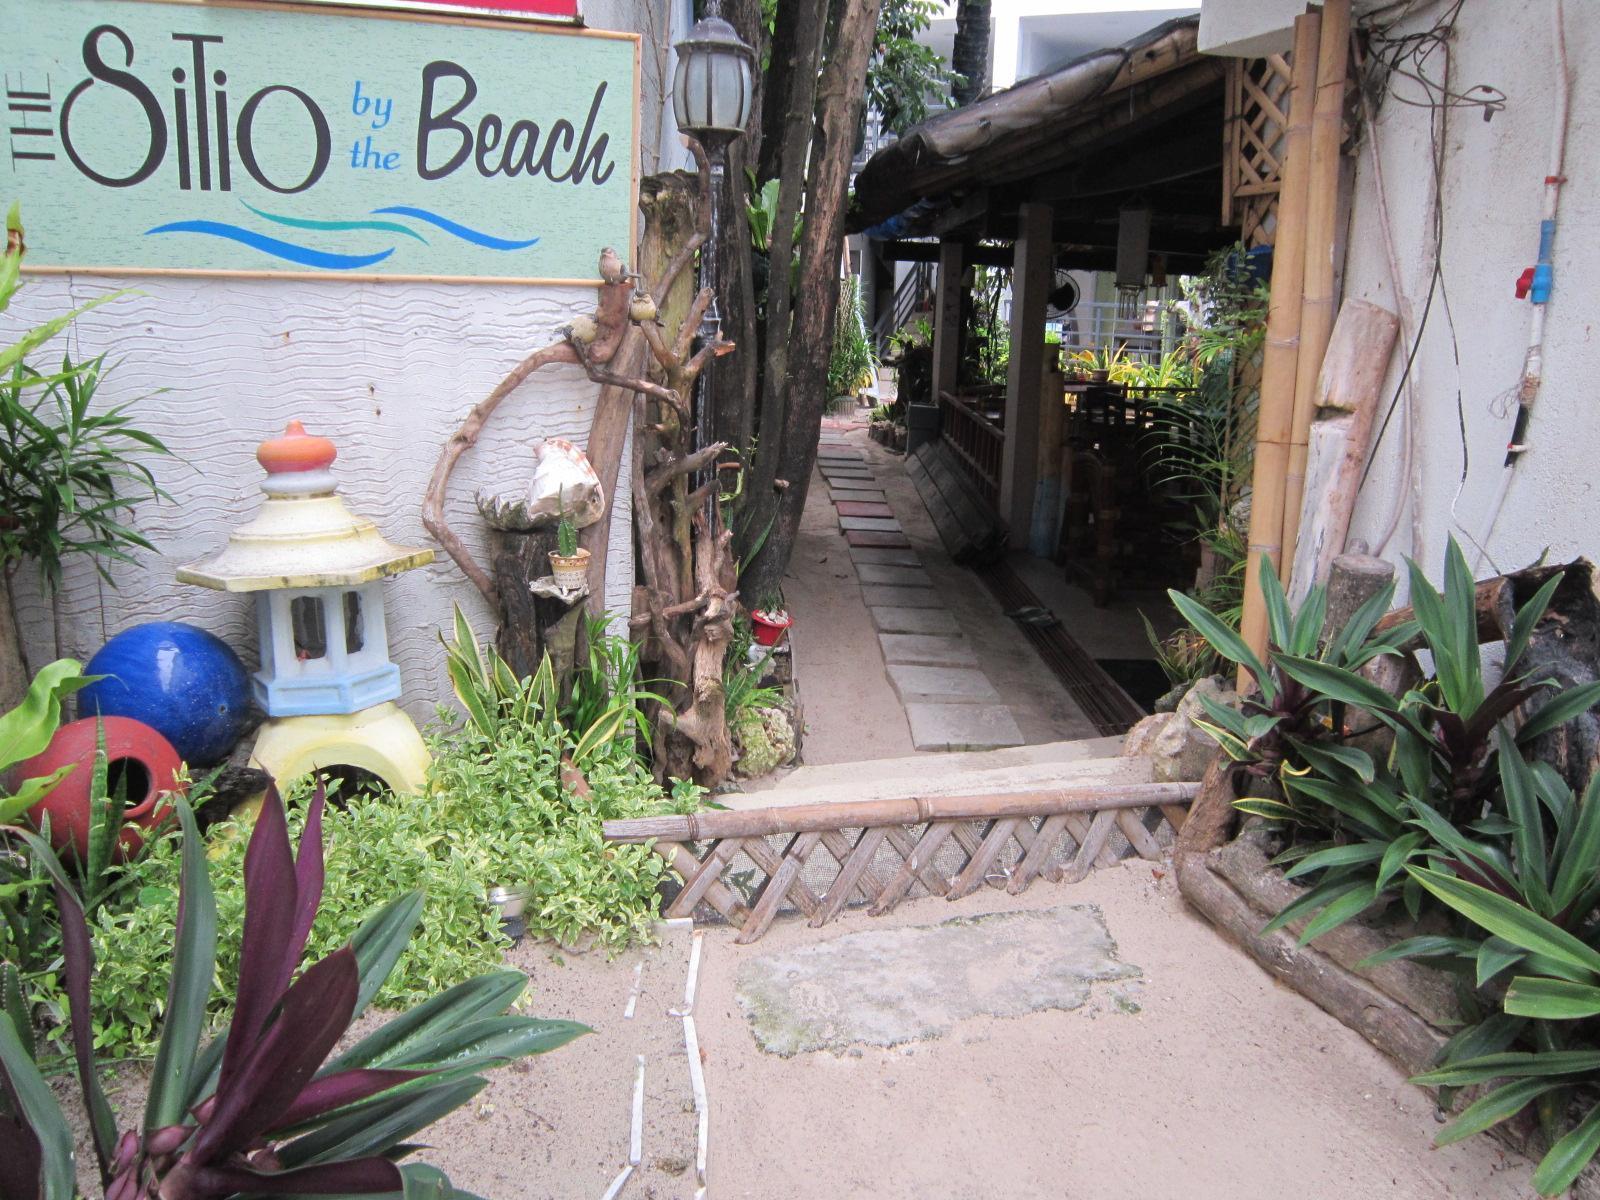 Quoalla Hotel Boracay Balabag  Exterior photo